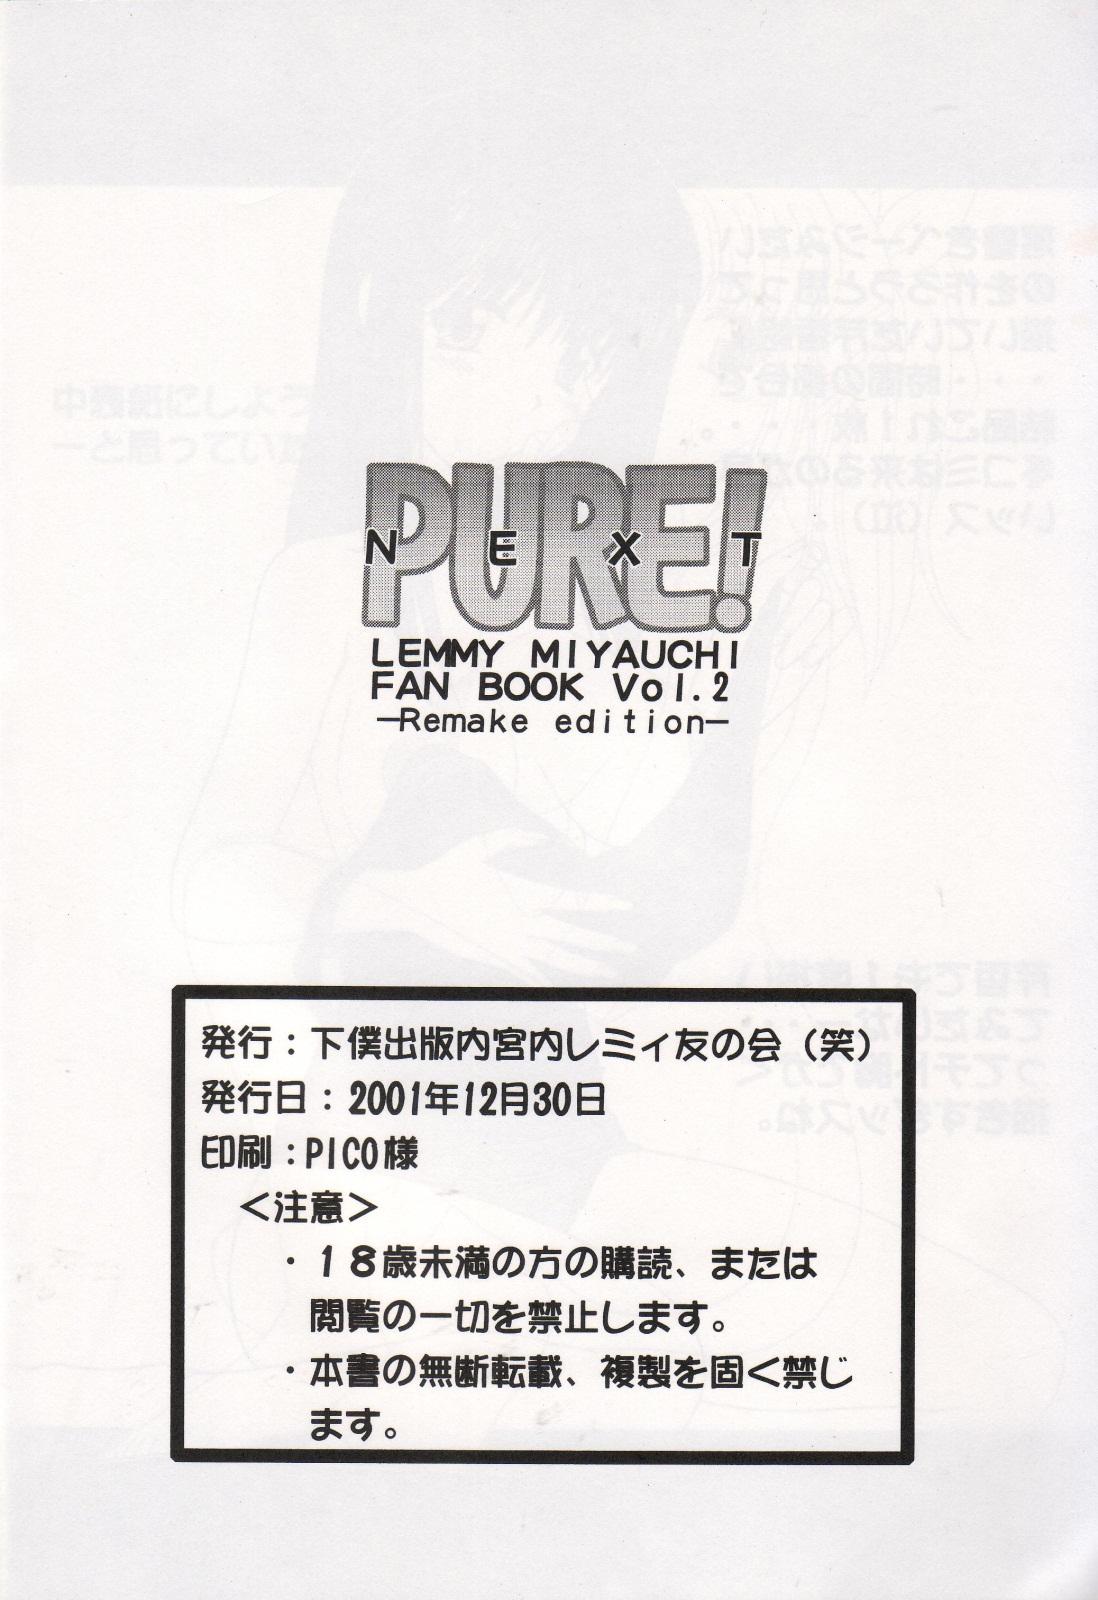 Pure! Next Lemmy Miyauchi Fan Book Vol. 2 31